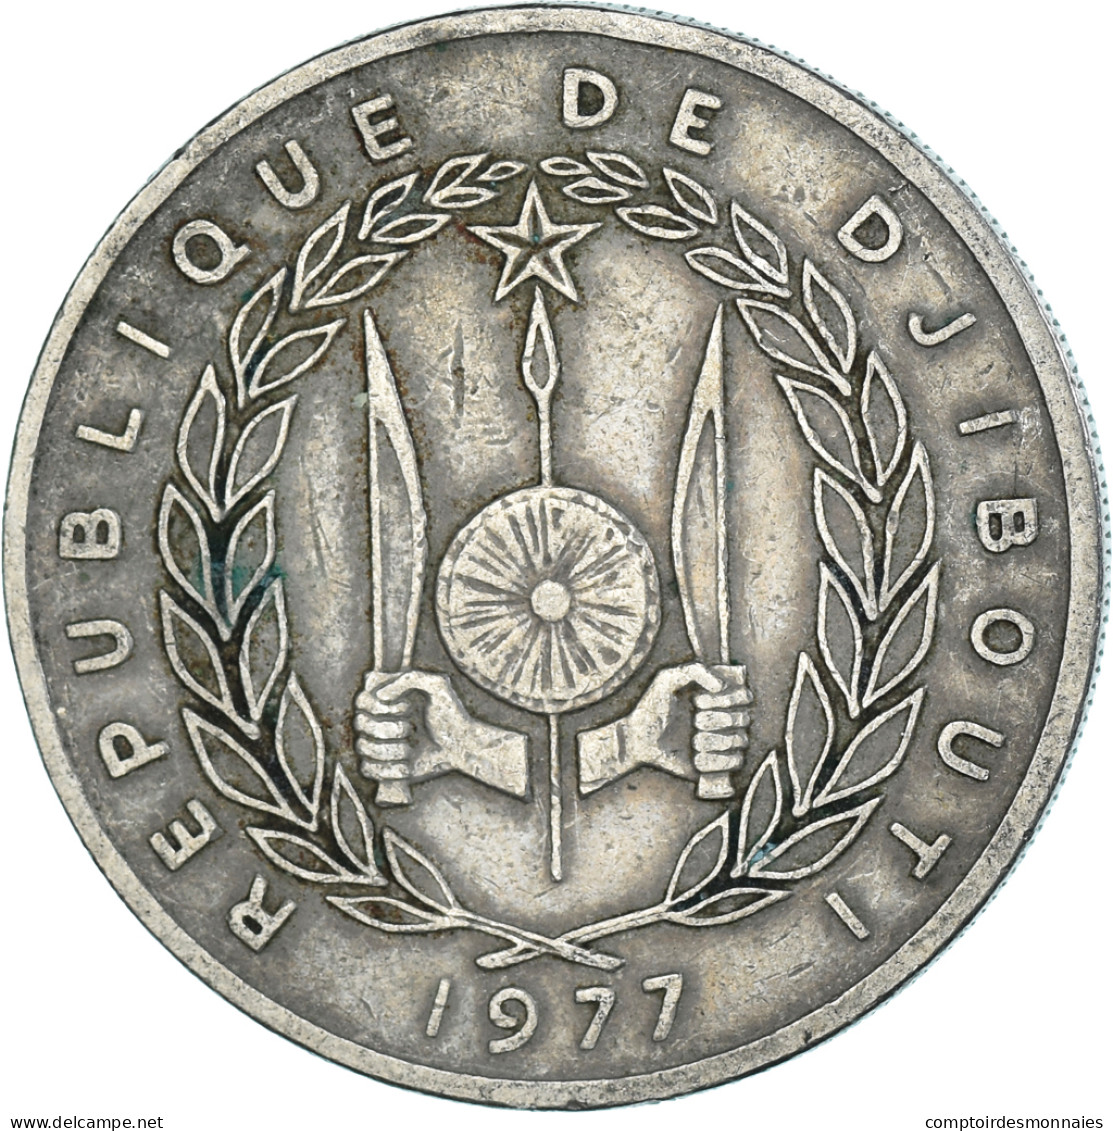 Monnaie, Djibouti, 100 Francs, 1977 - Dschibuti